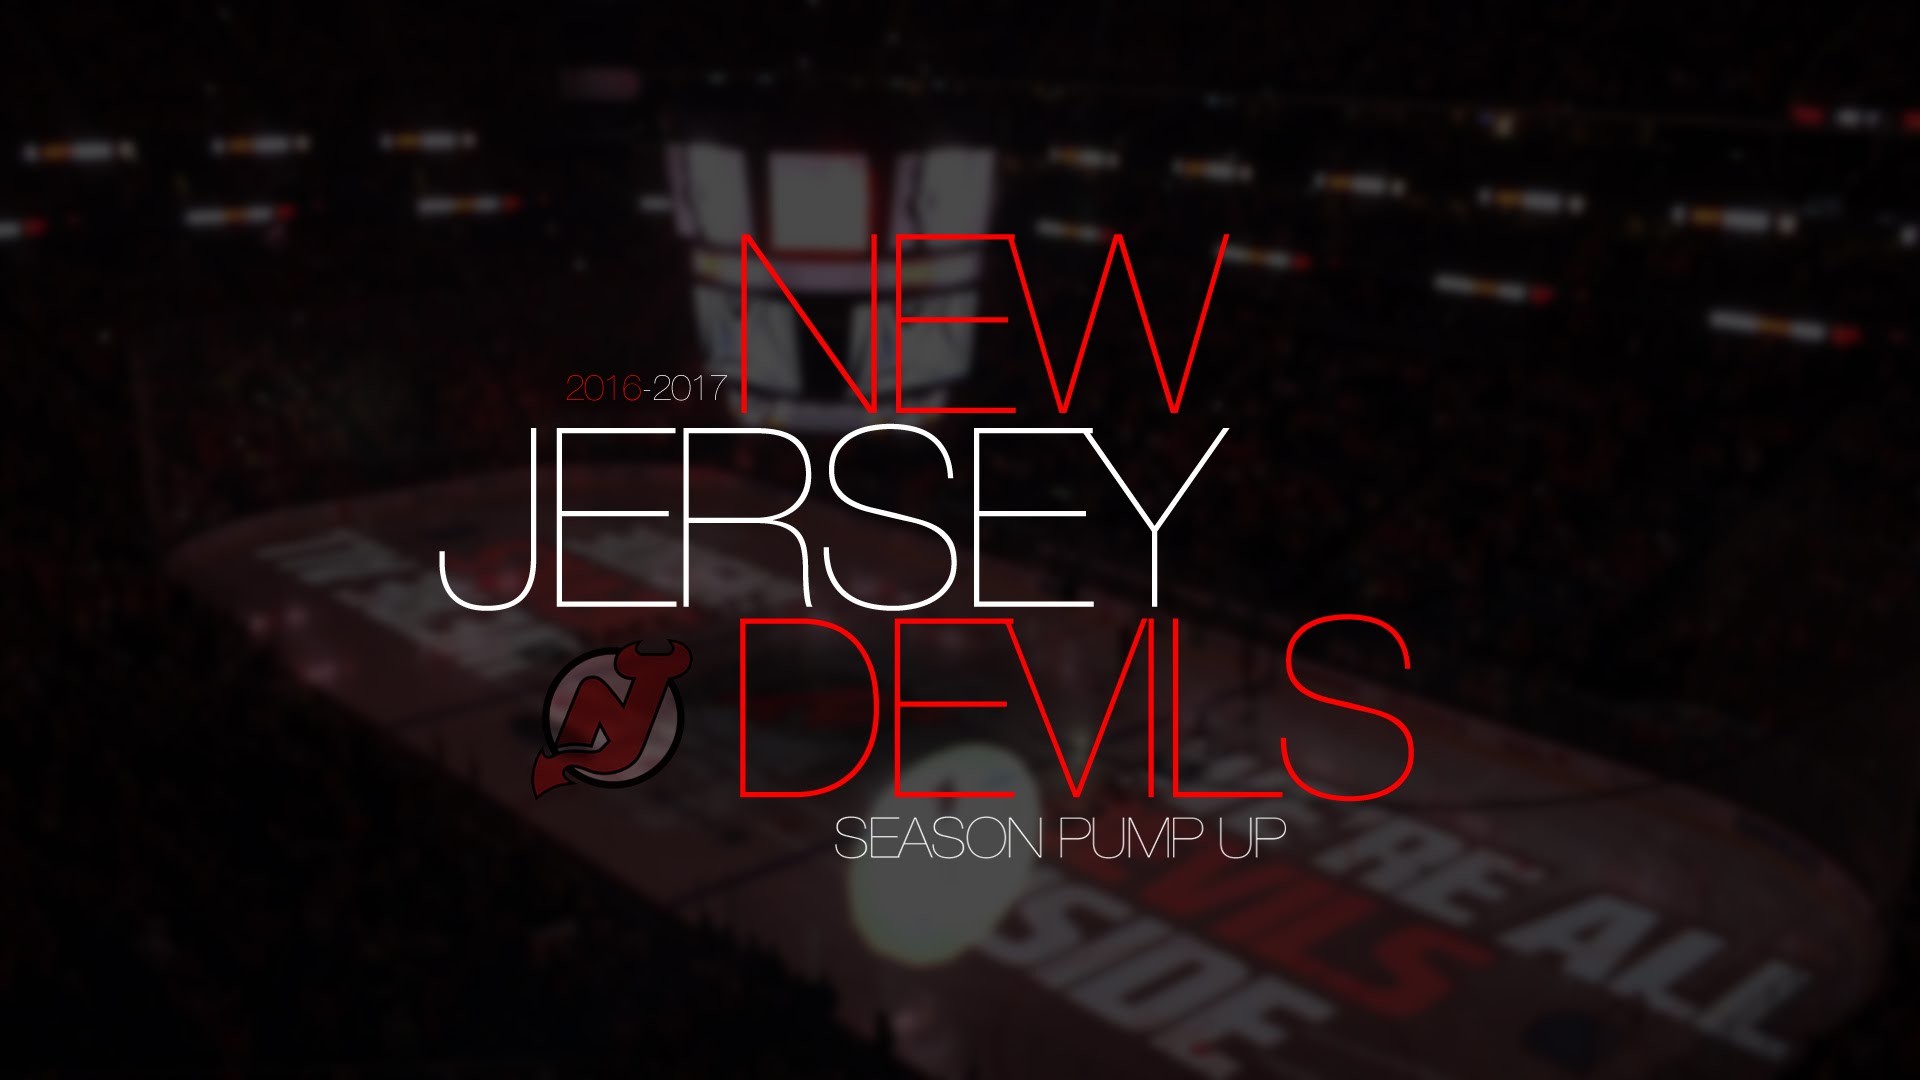 1920x1080 New Jersey Devils 2016-2017 Season Pump Up [HD]